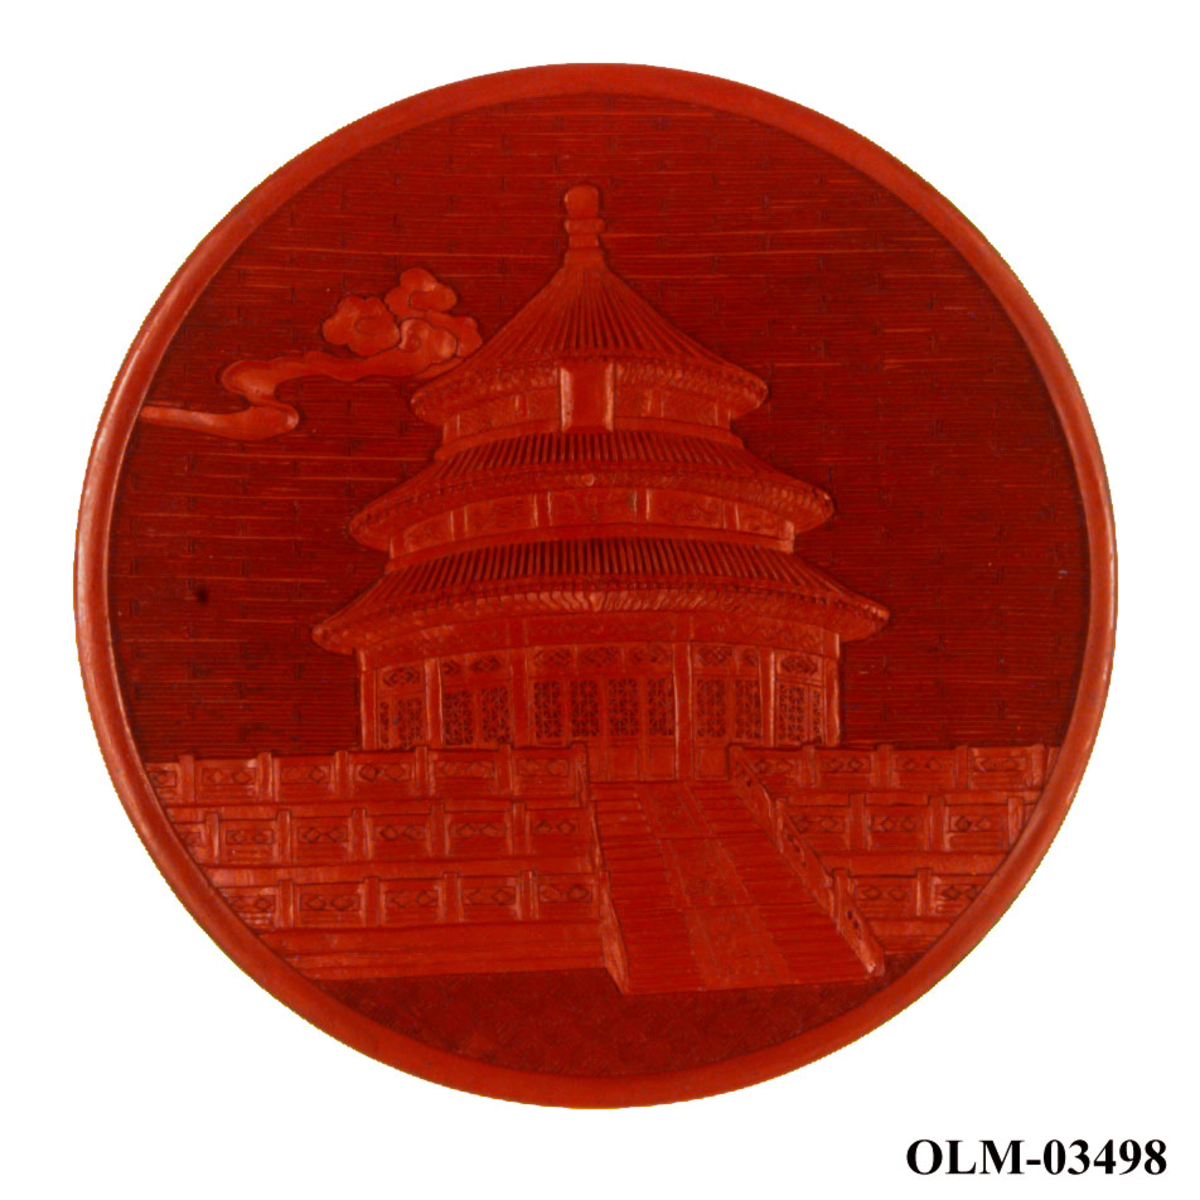 Sort og rød pyntetallerken med motiv av Himmelens tempel i Beijing. Det følger med en støtte til tallerkenen. Tallerkeken ligger i en mønstret eske.